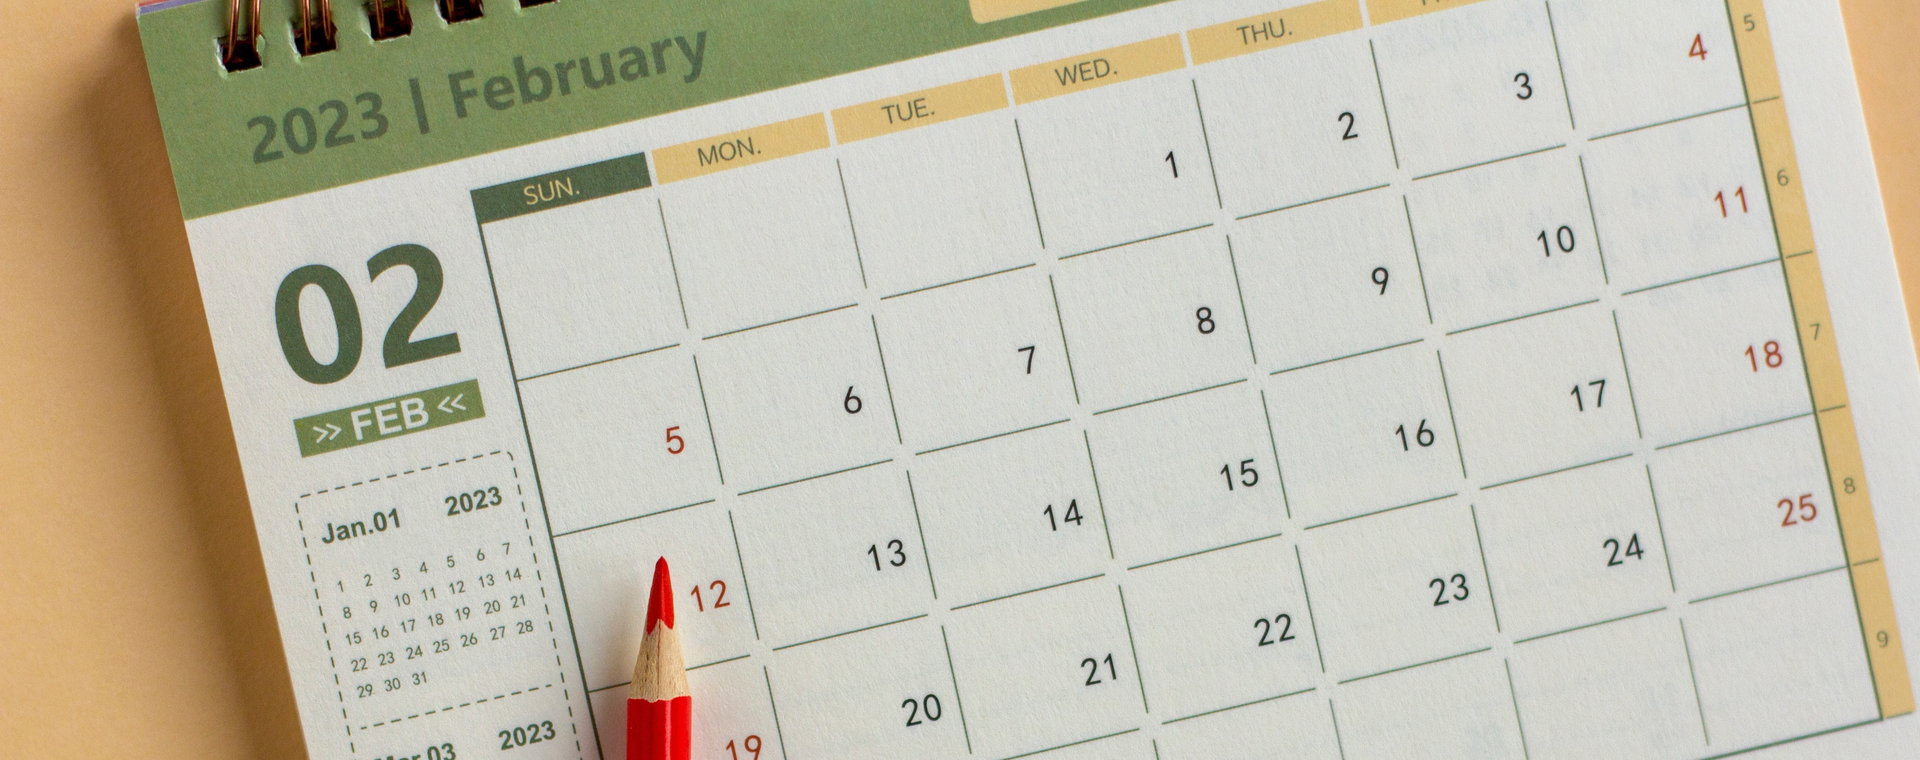 Ważne terminy i zmiany w prawie w lutym 2023 r.